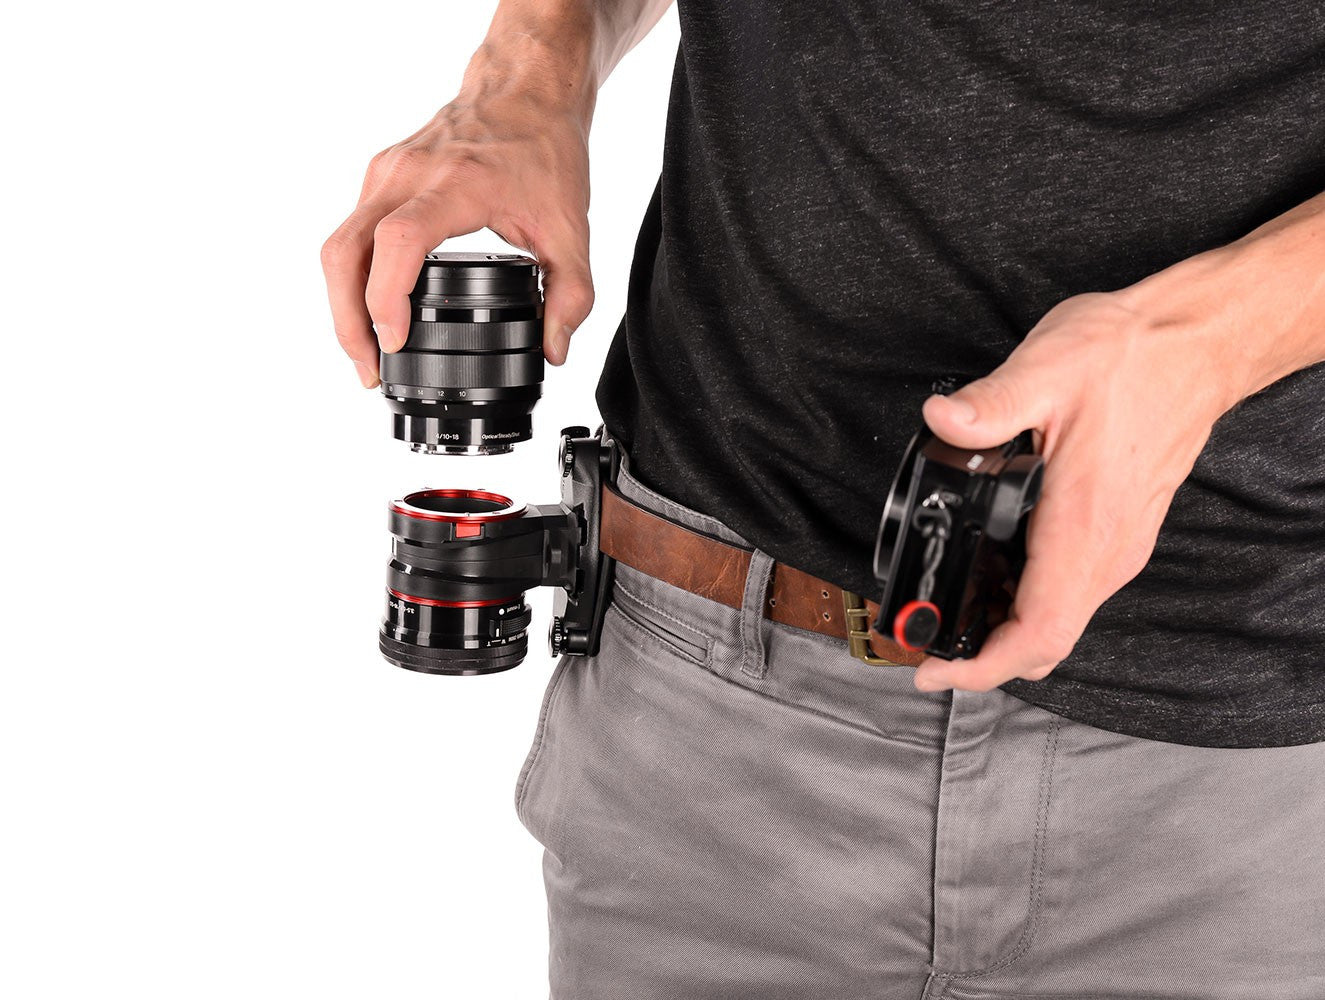 Peak Design Capture Lens Clip for Nikon Lenses, bags accessories, Peak Design - Pictureline  - 3